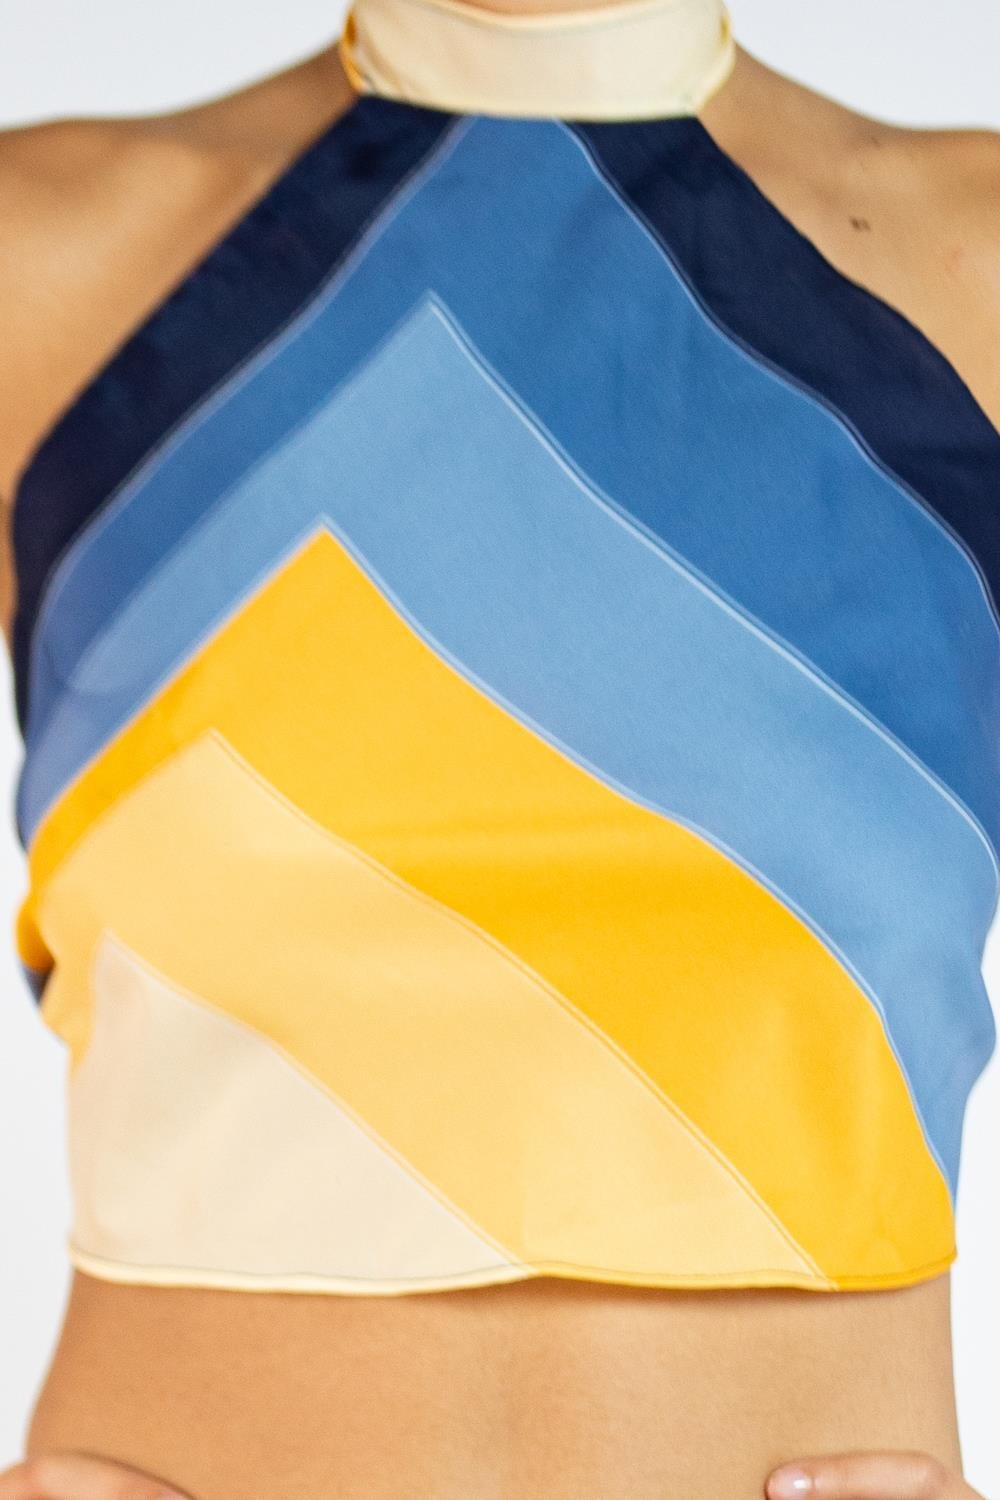 Morphew Collection, cravate géométrique en soie bleue, jaune et noire fabriquée à partir d'un vinyle en vente 4